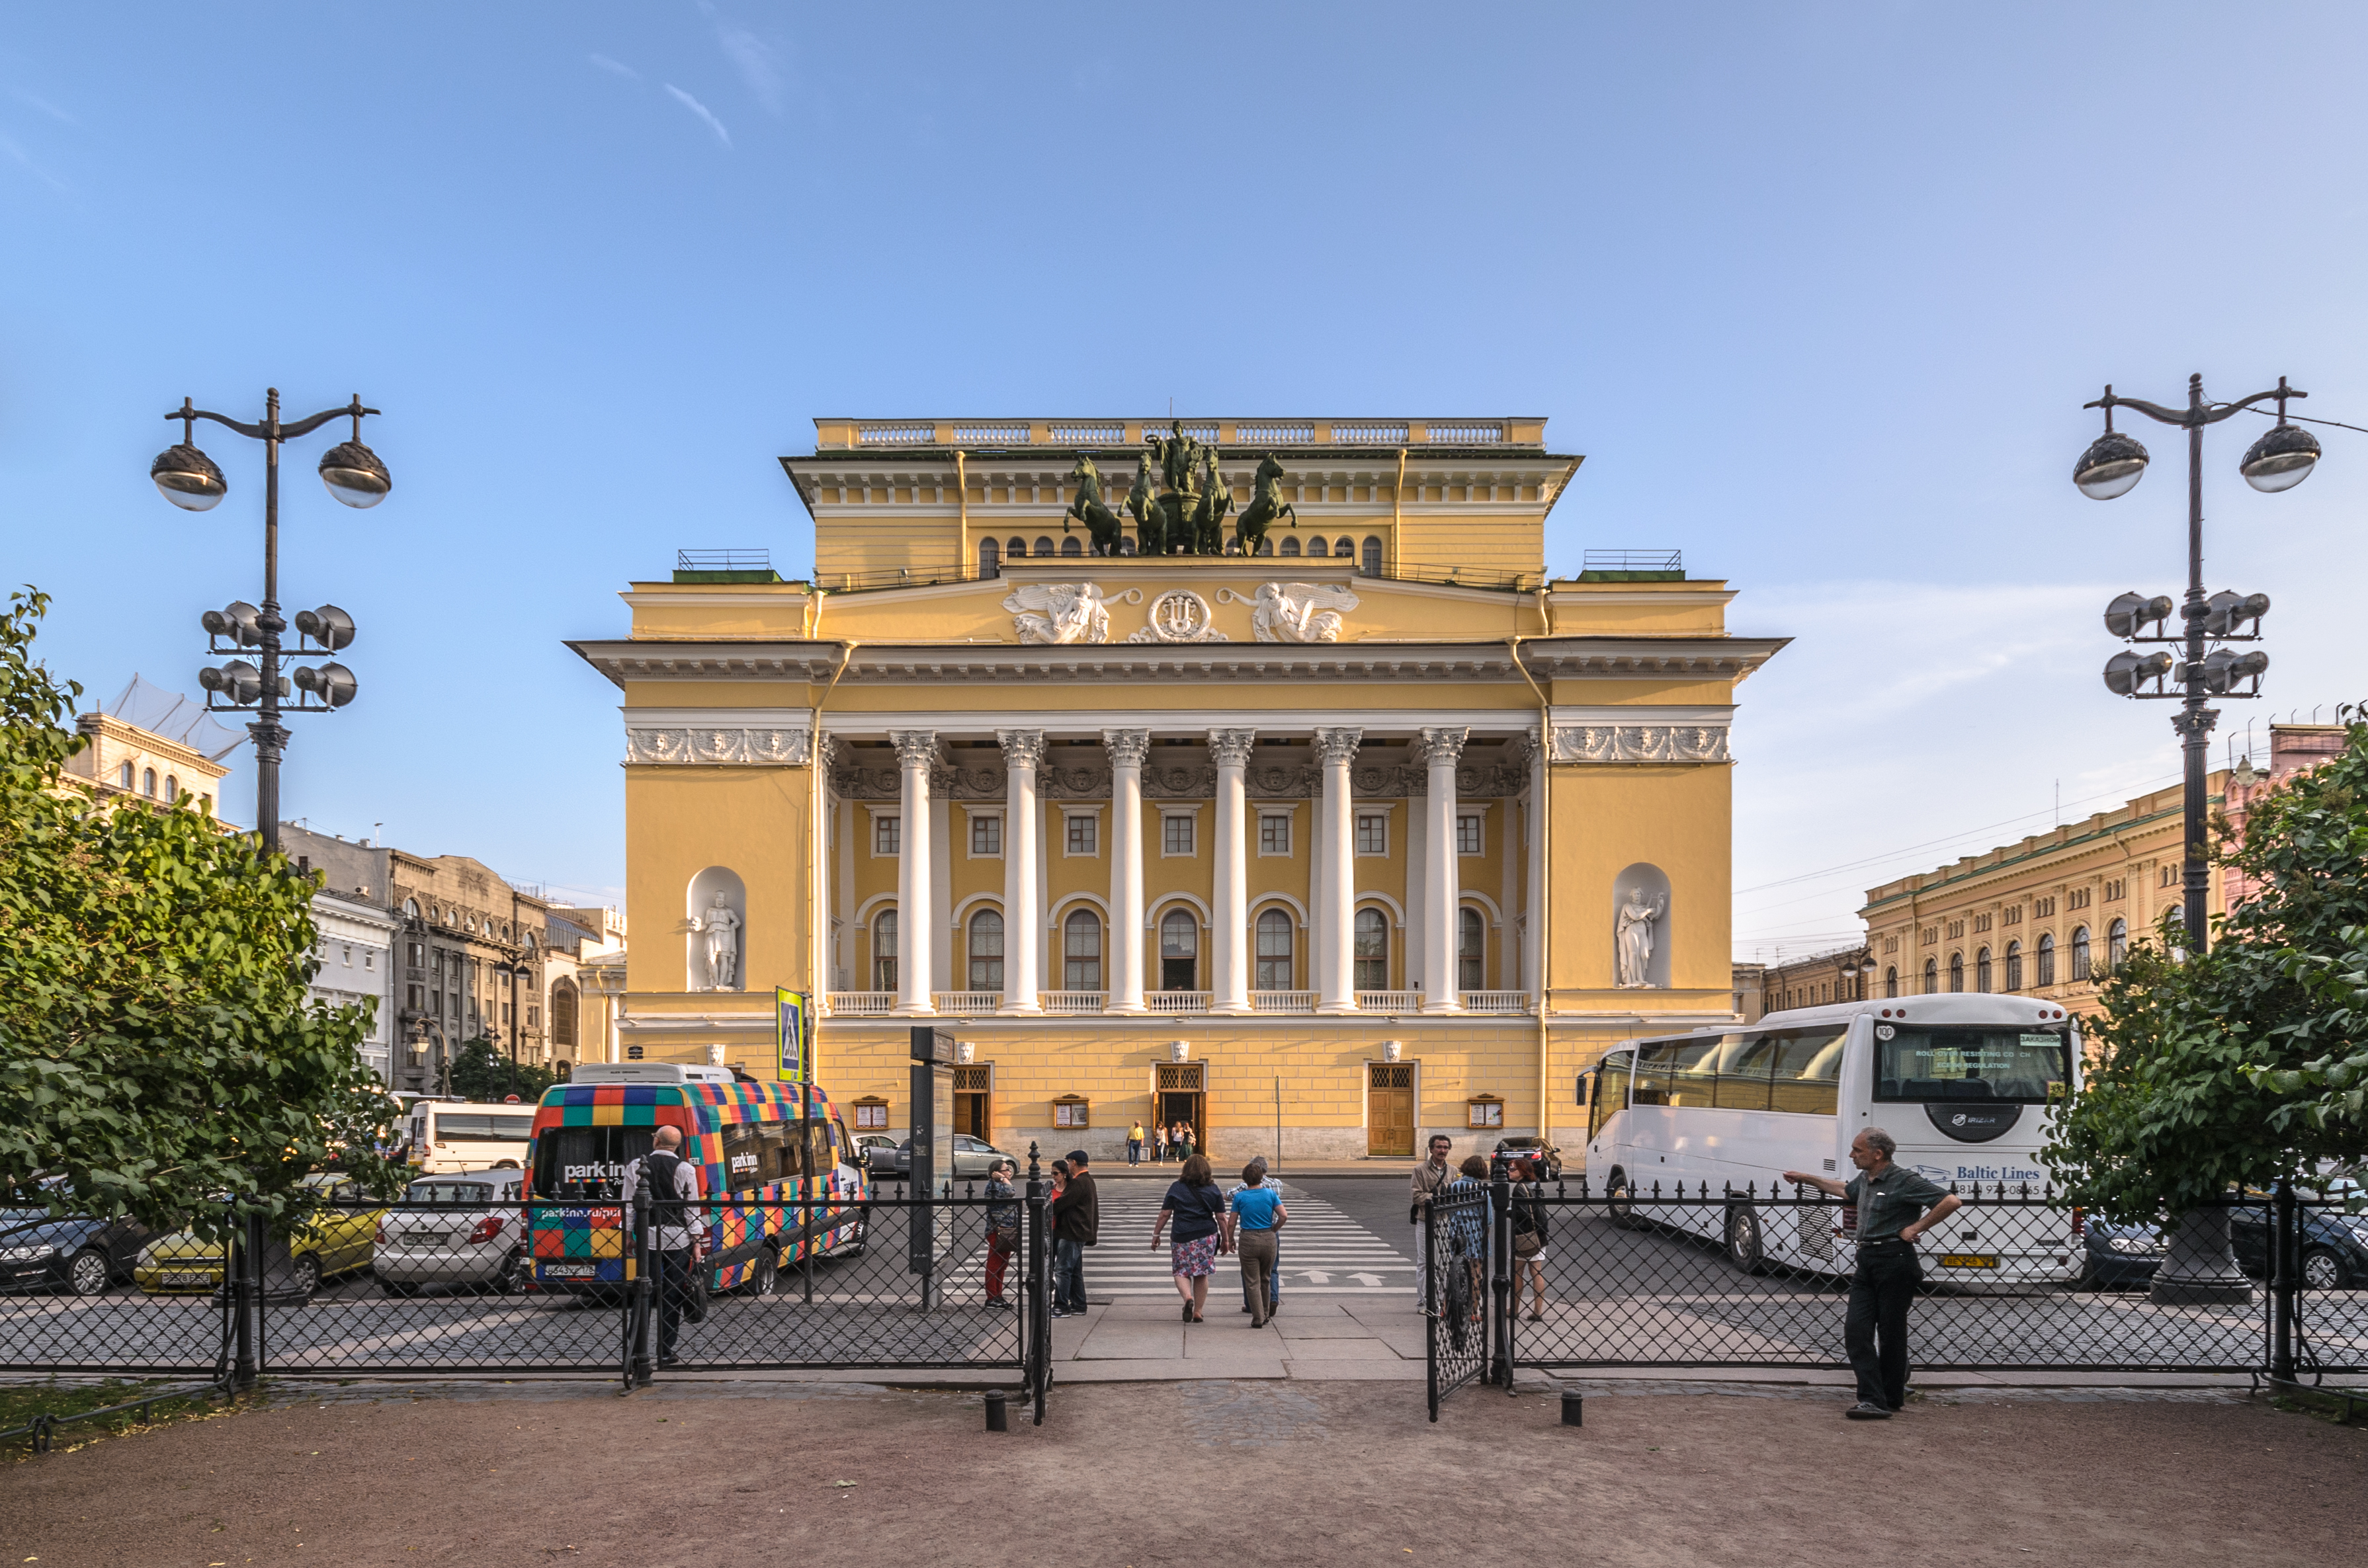 Alexandrinsky Theatre overview